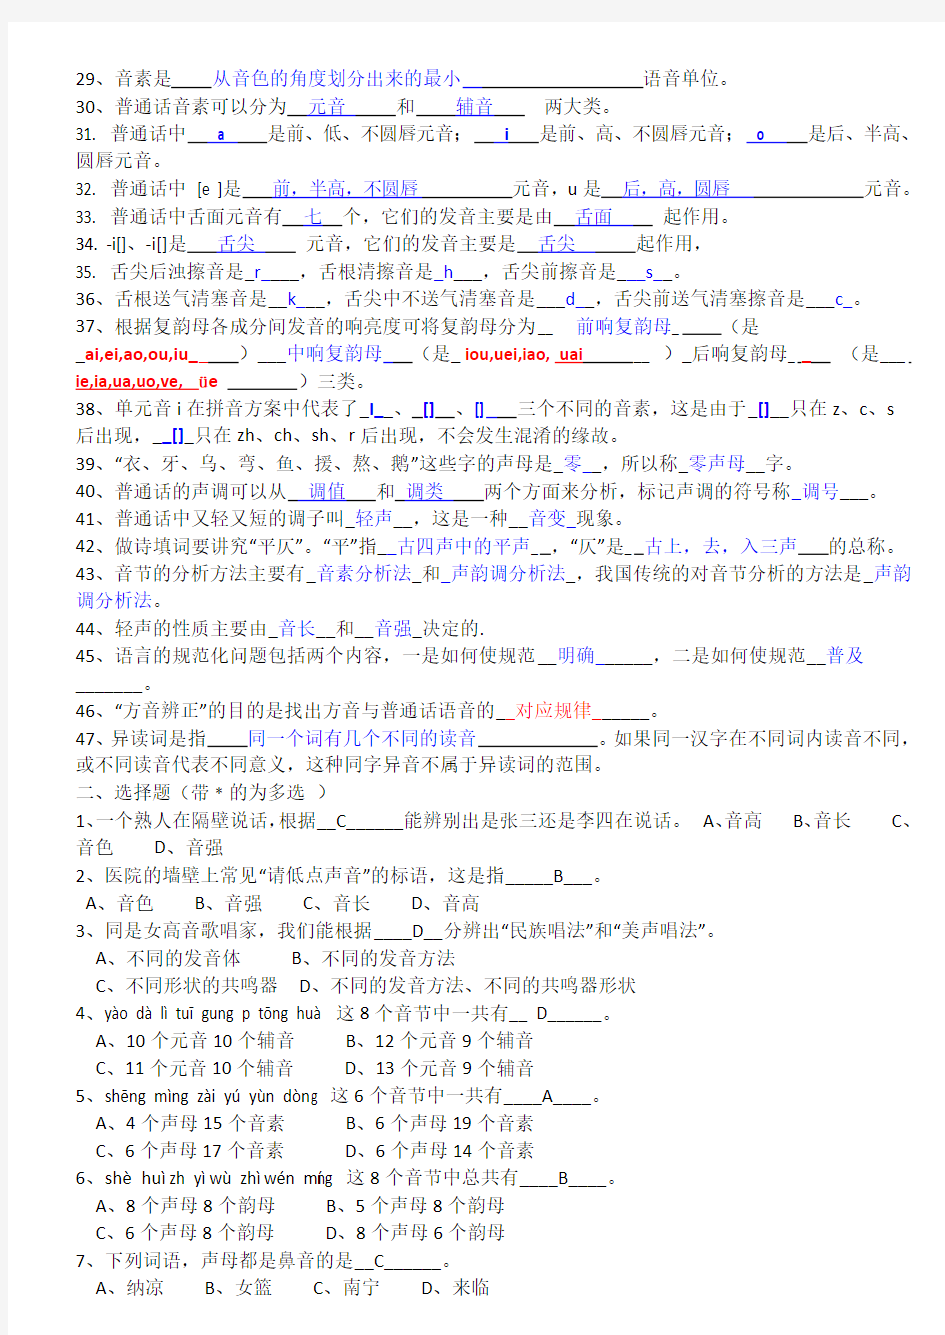 现代汉语练习-第2章--语音-(附答案) 2